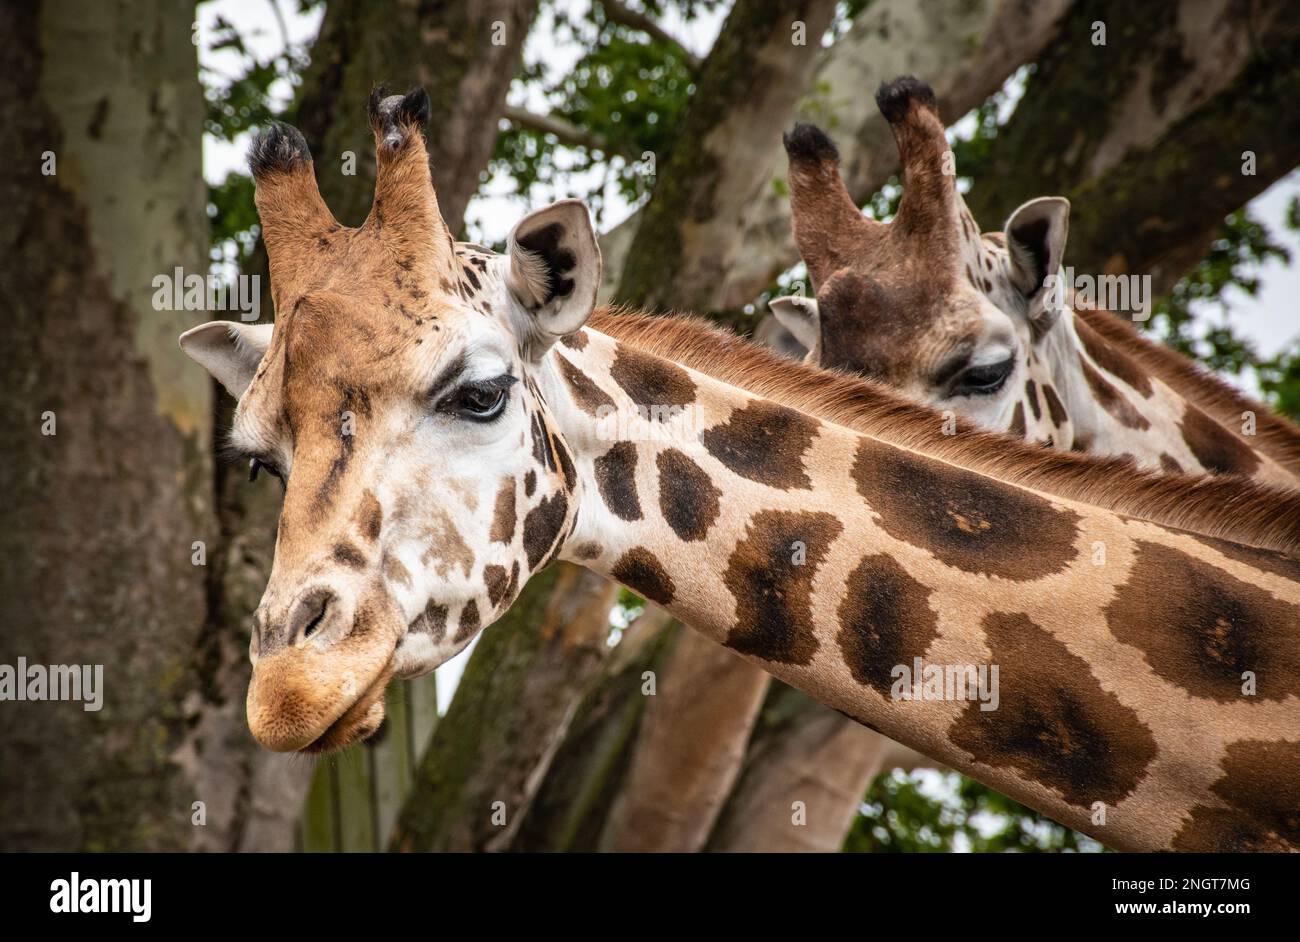 Des girafes curieux dans la nature. Gros plan de la tête et du cou d'une girafe. Banque D'Images